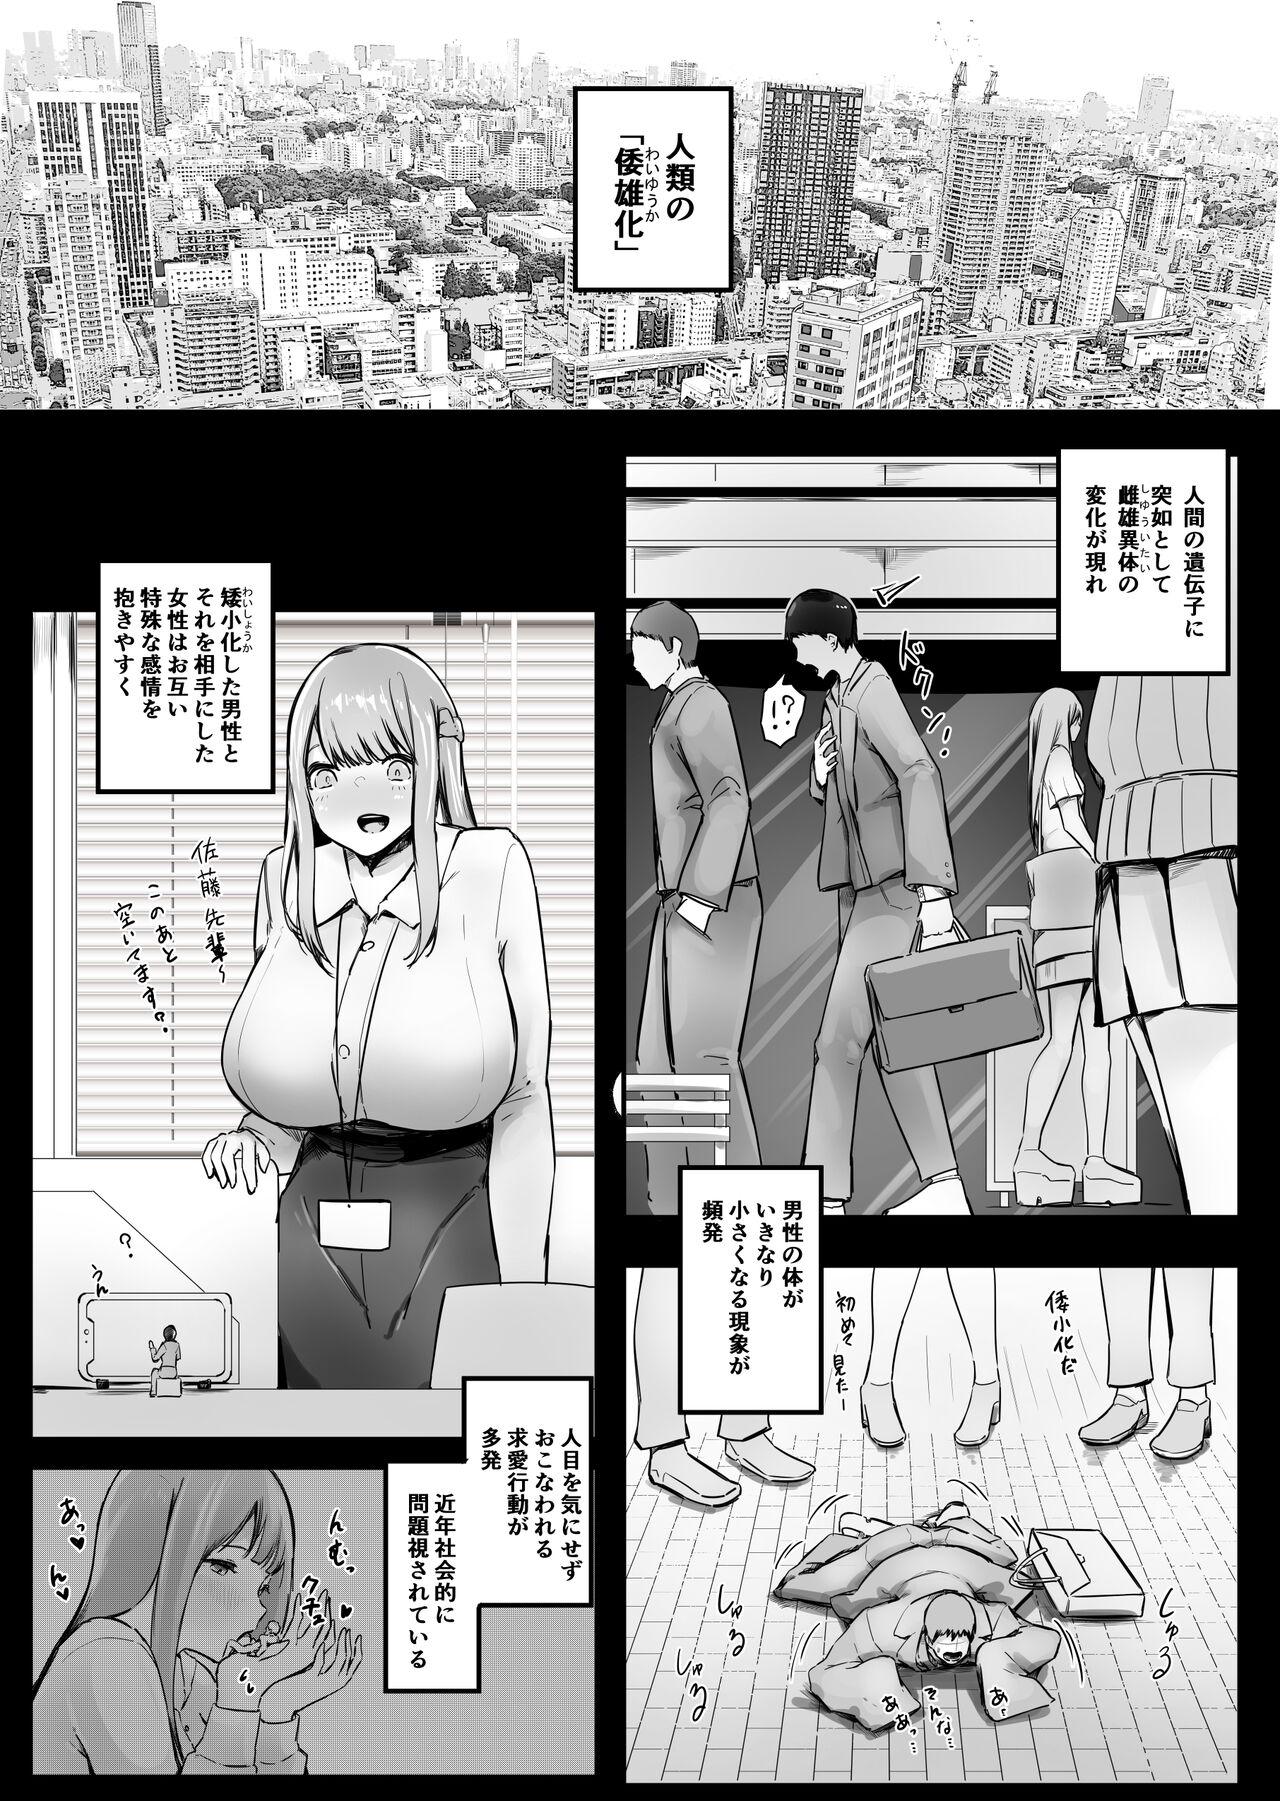 Novinhas Waishou H! "Koishitsu Hen" Jou Sucking Dick - Page 3